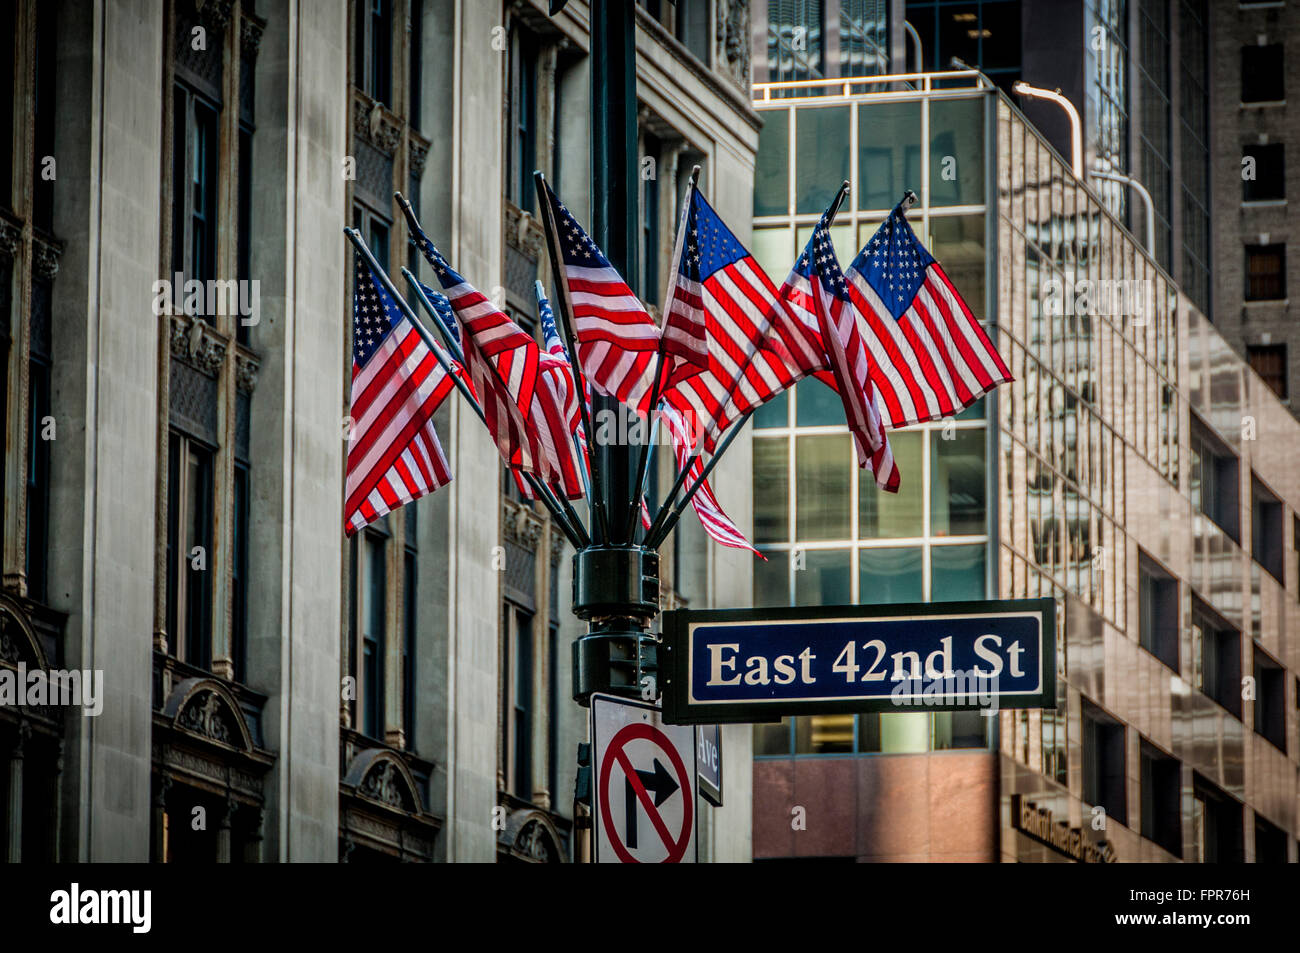 East 42nd St Zeichen und Gruppe von amerikanischen Flaggen auf Laternenpfahl, New York City, USA. Stockfoto